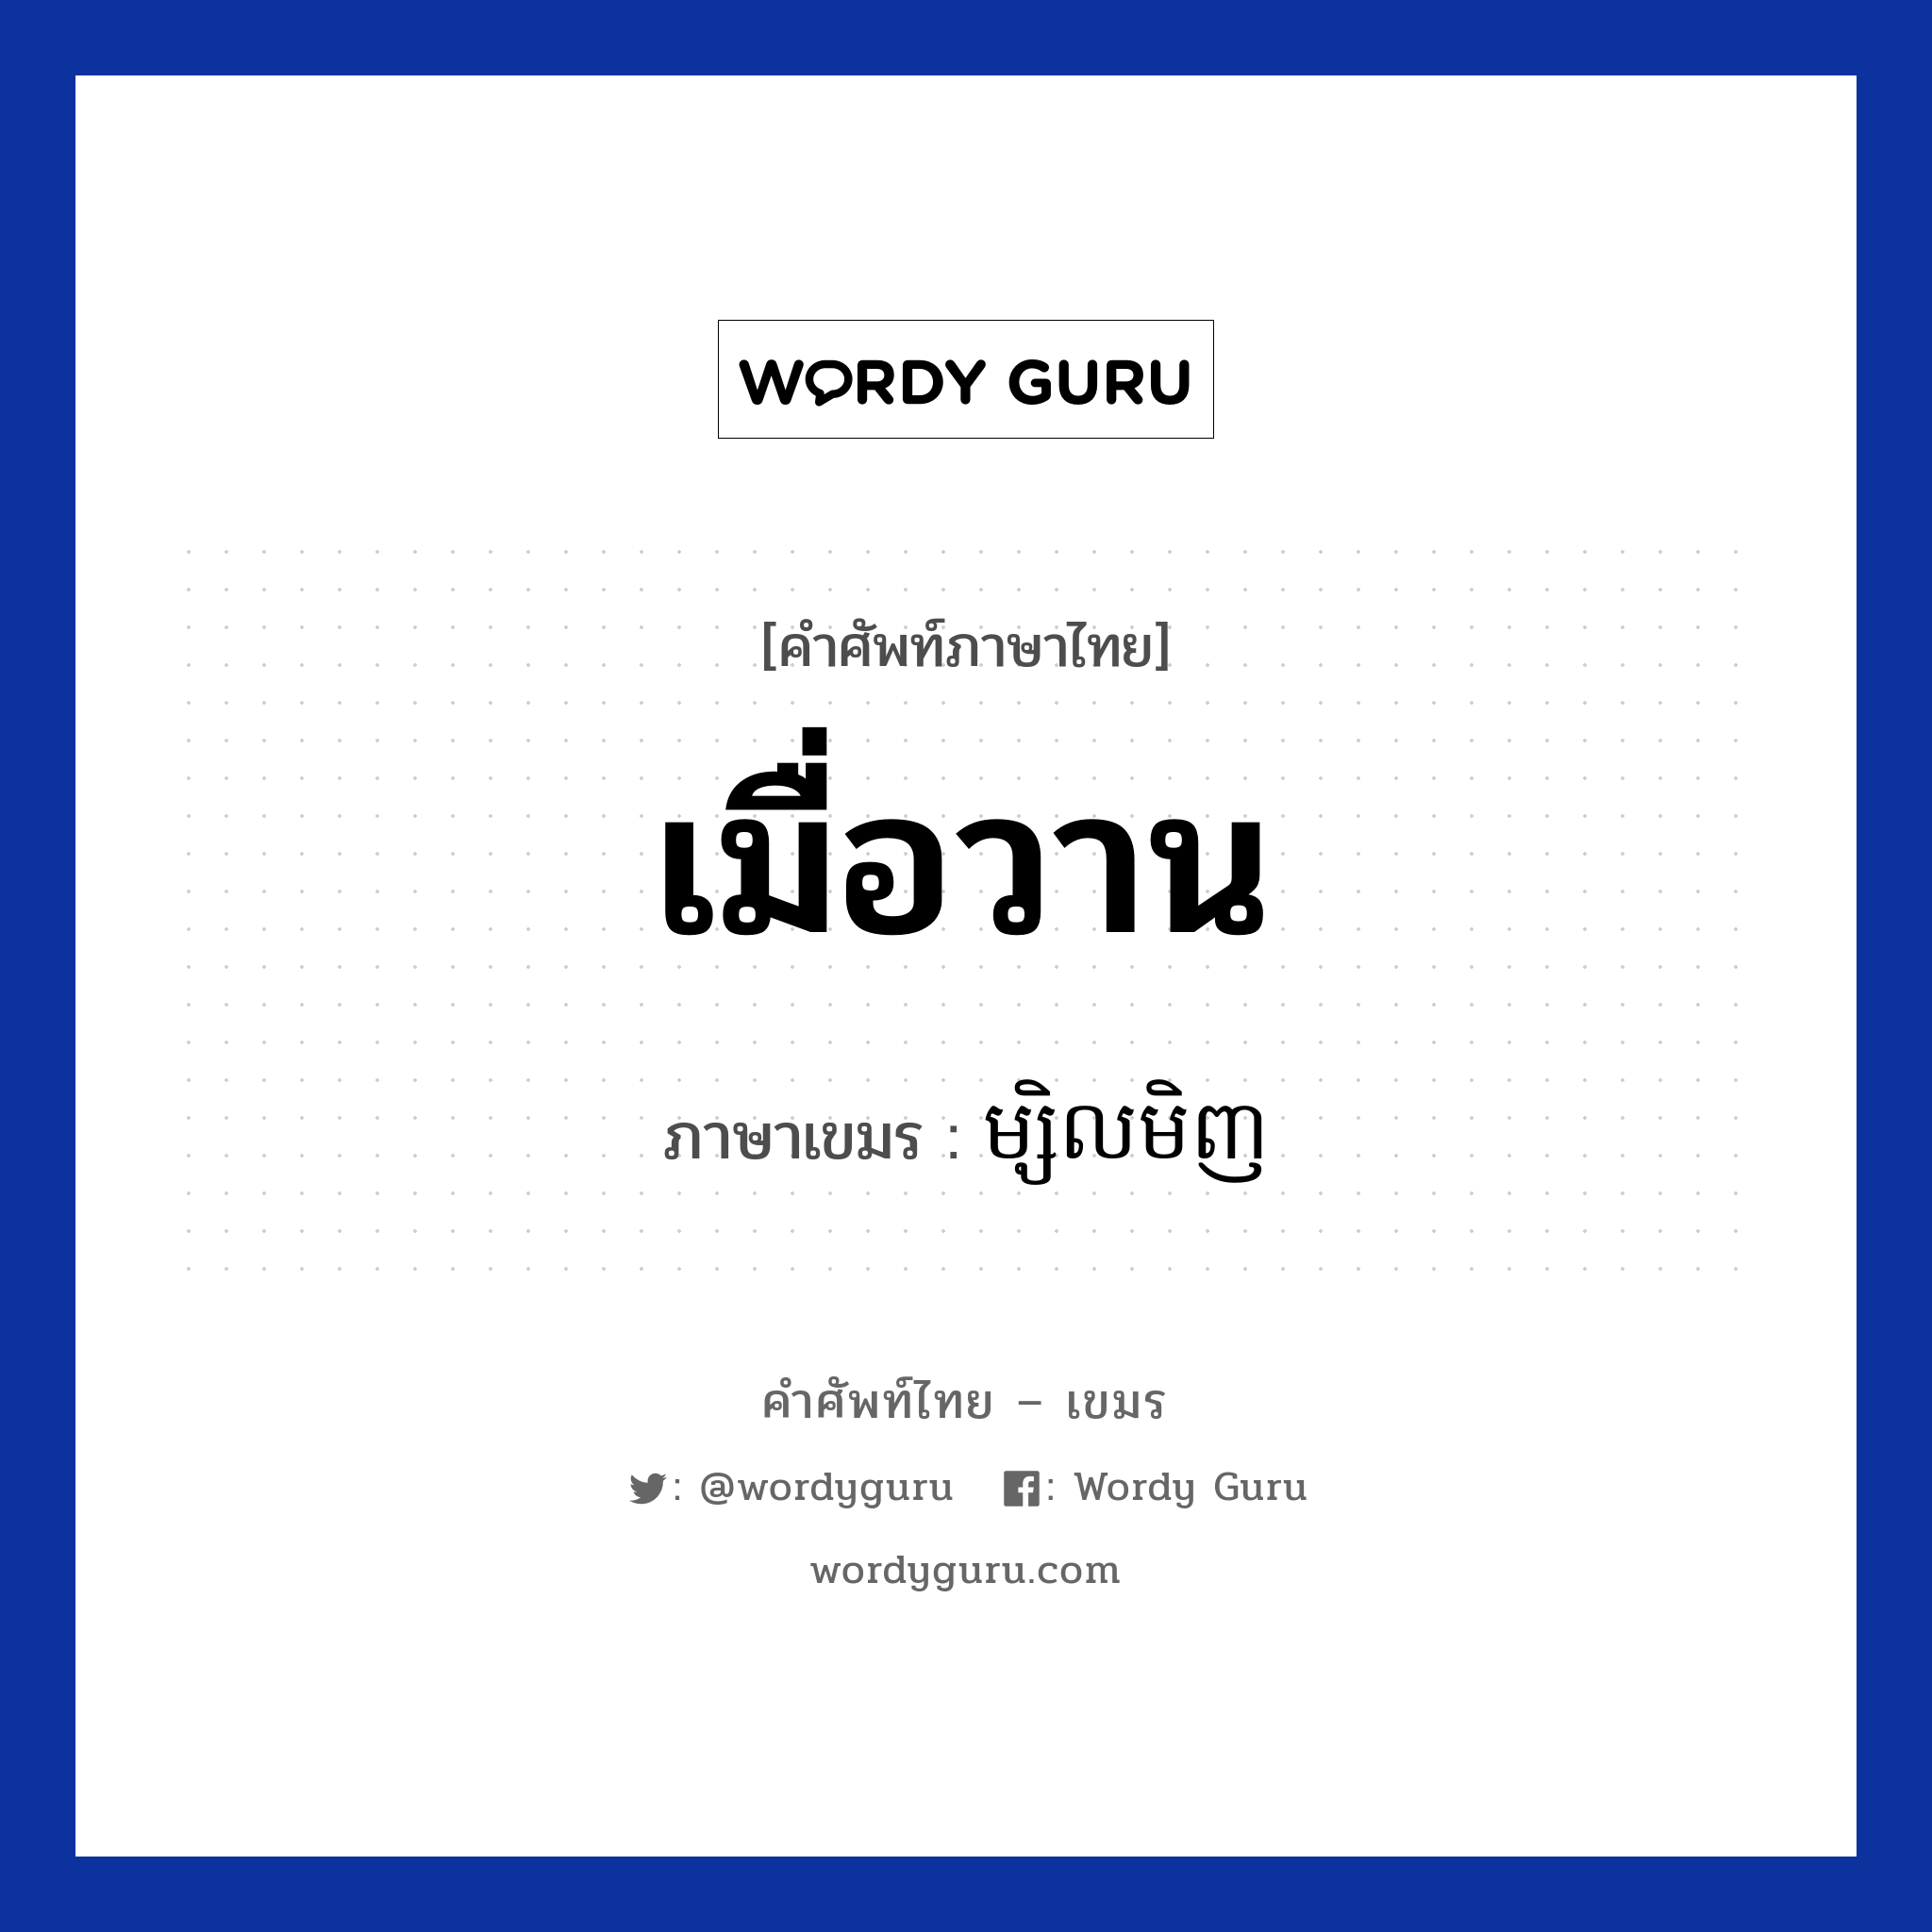 เมื่อวาน ภาษาเขมรคืออะไร, คำศัพท์ภาษาไทย - เขมร เมื่อวาน ภาษาเขมร ម្សិលមិញ หมวด วัน Mselmenh หมวด วัน